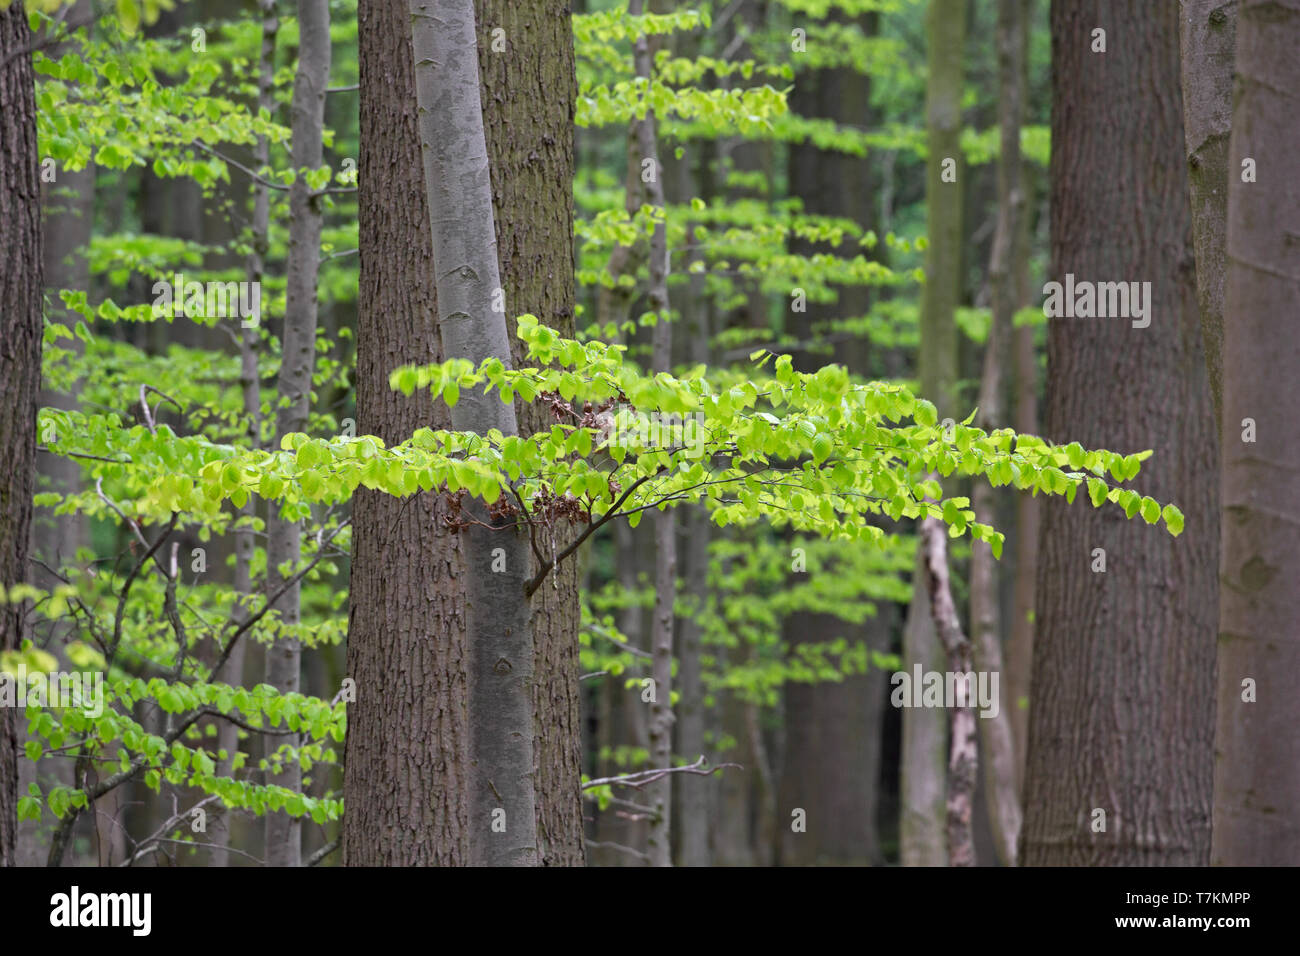 Nuove foglie sul faggio europeo / comune faggio (Fagus sylvatica) alberi nel bosco di latifoglie in primavera Foto Stock